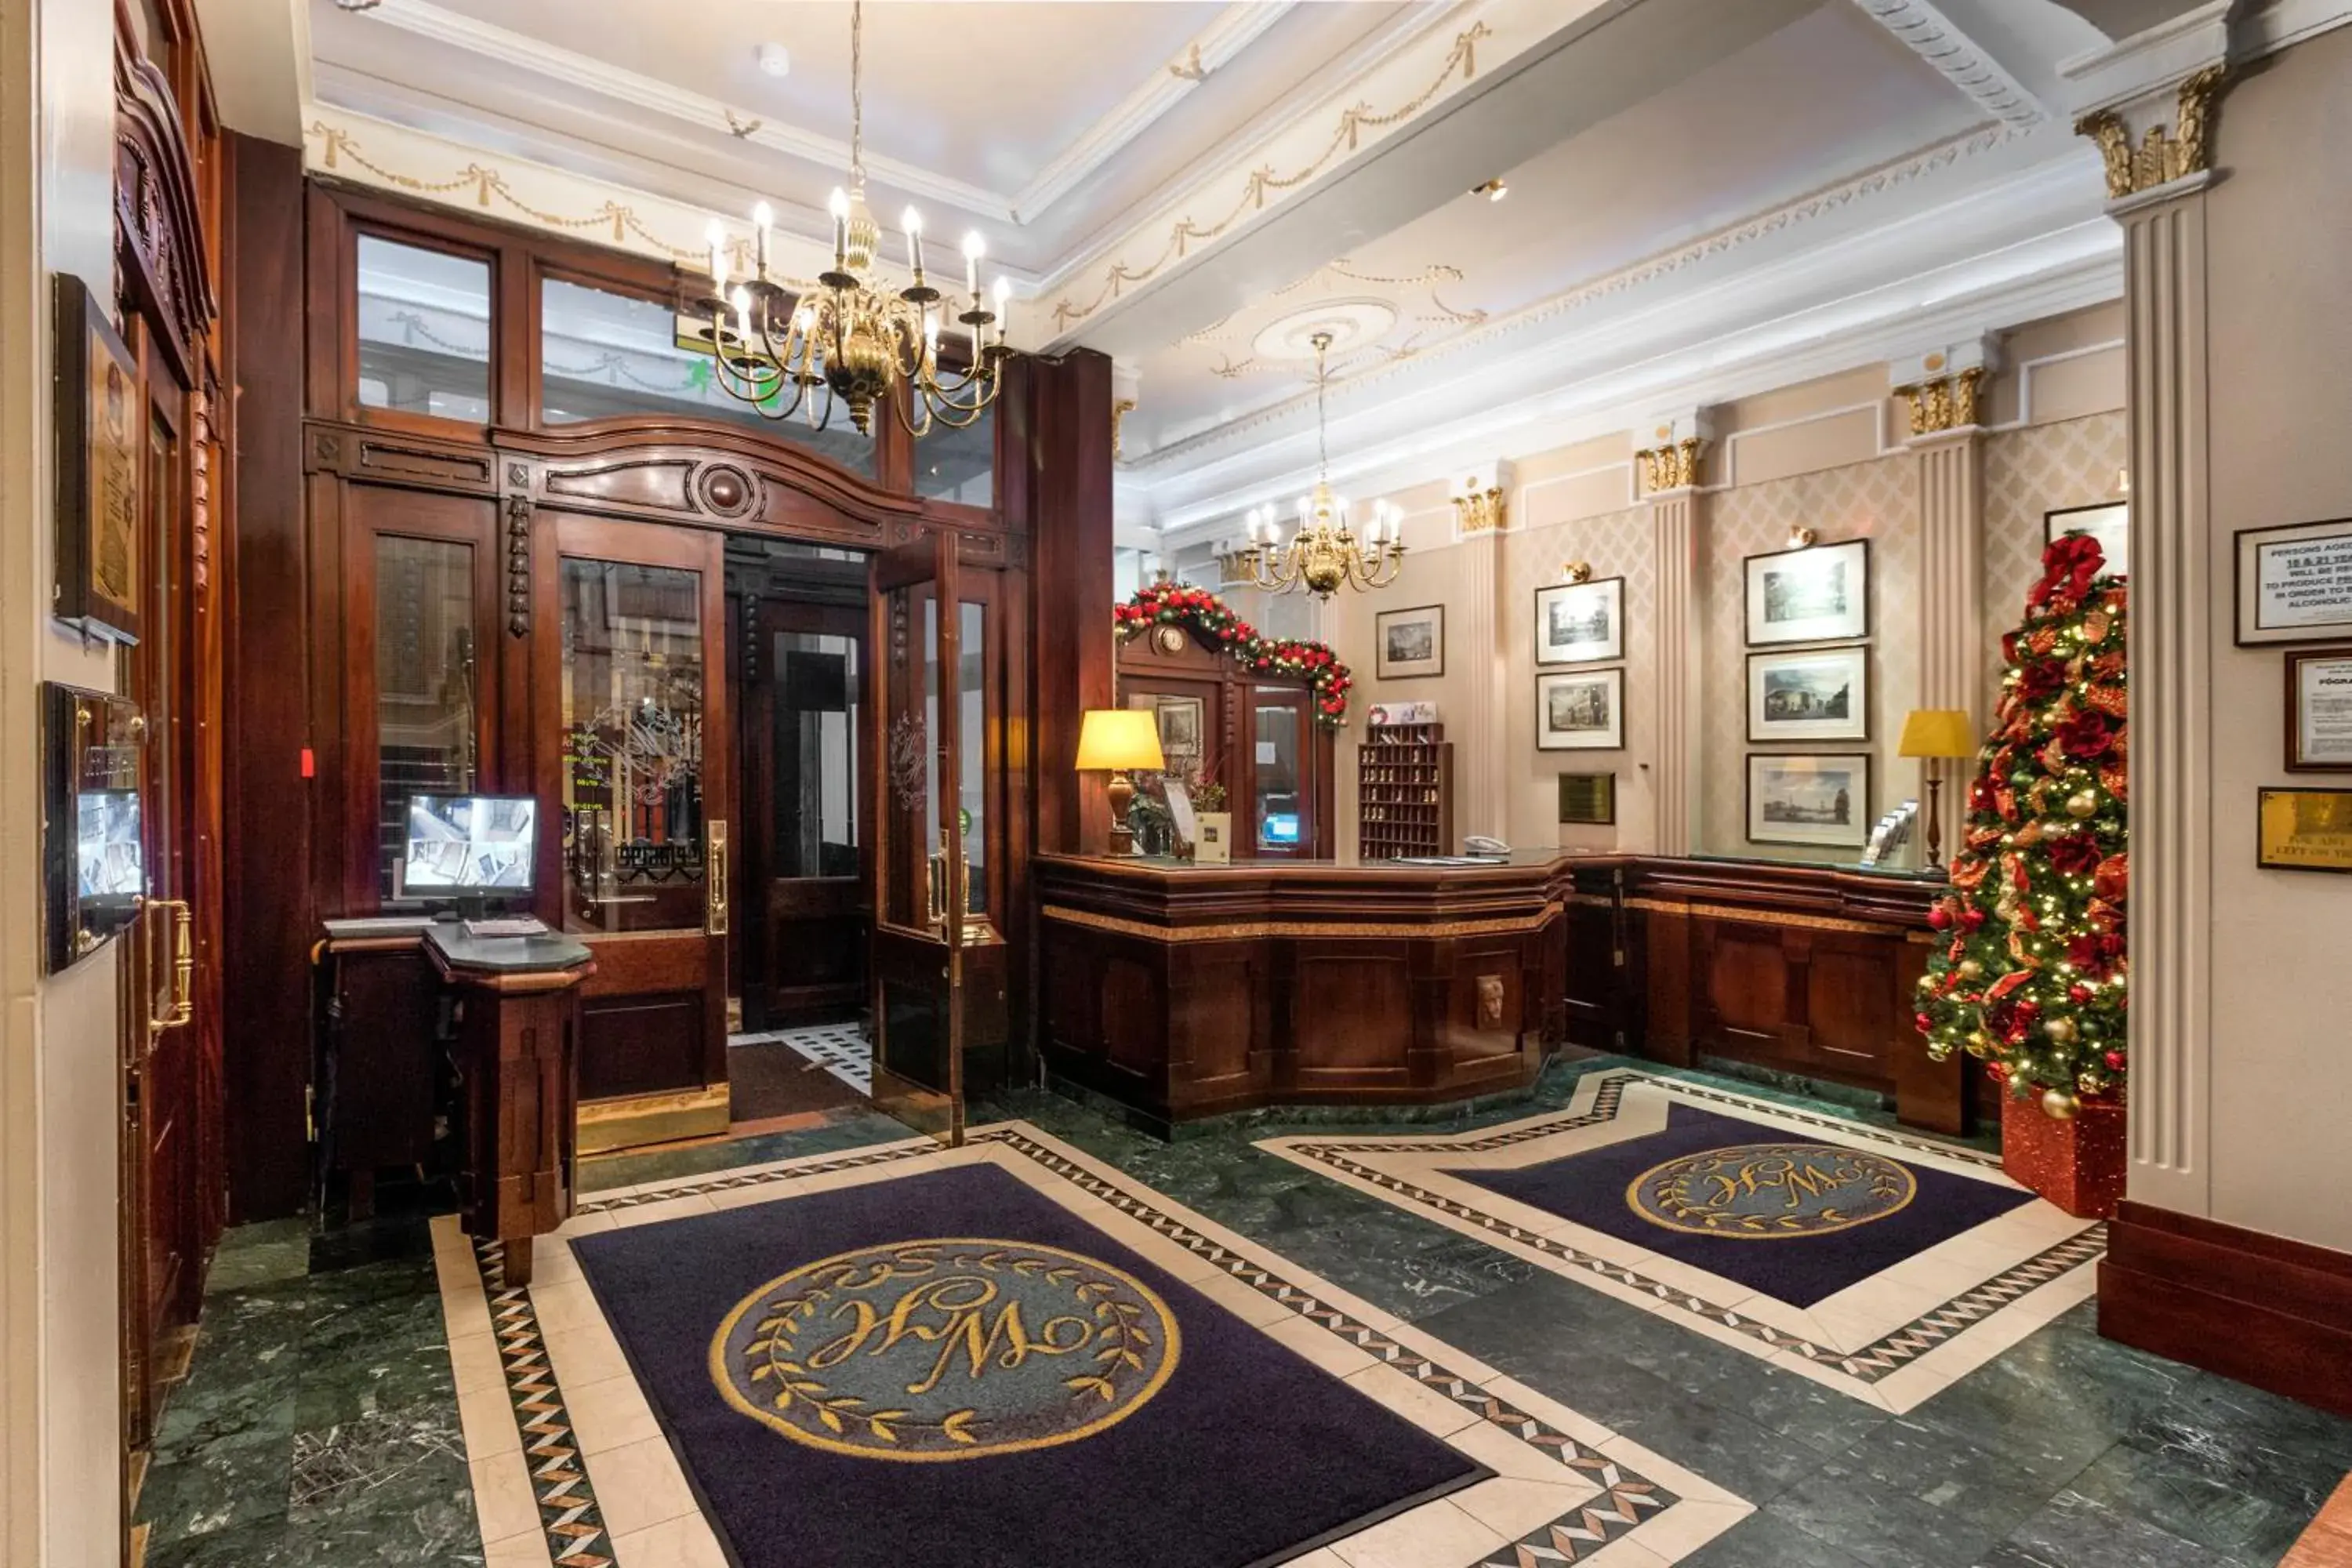 Lobby or reception, Lobby/Reception in Wynn's Hotel